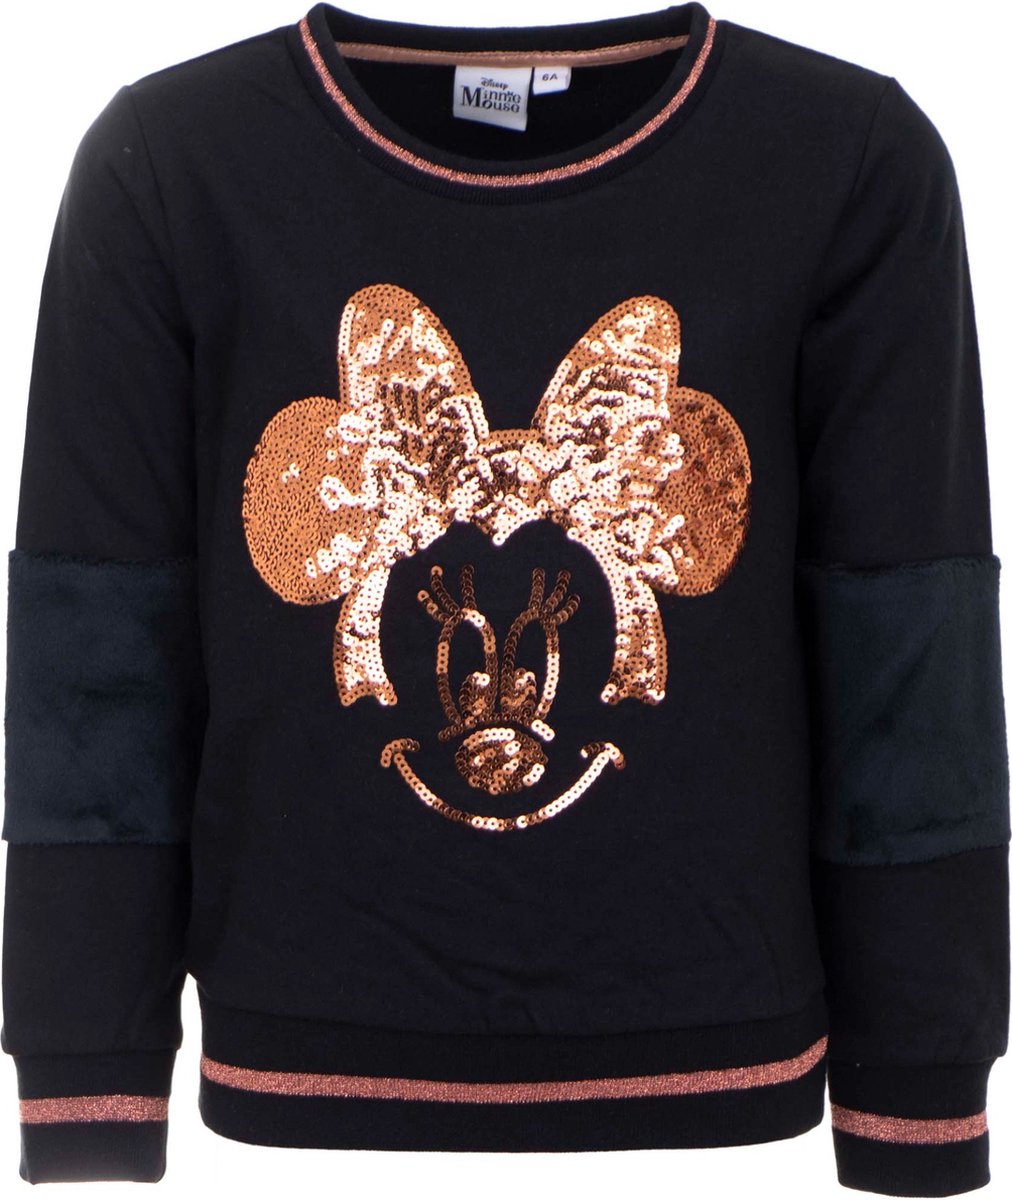 Disney Minnie Mouse Sweater - Zwart/Koper - Pailletten - Katoen - Maat 128 (tot 8 jaar)